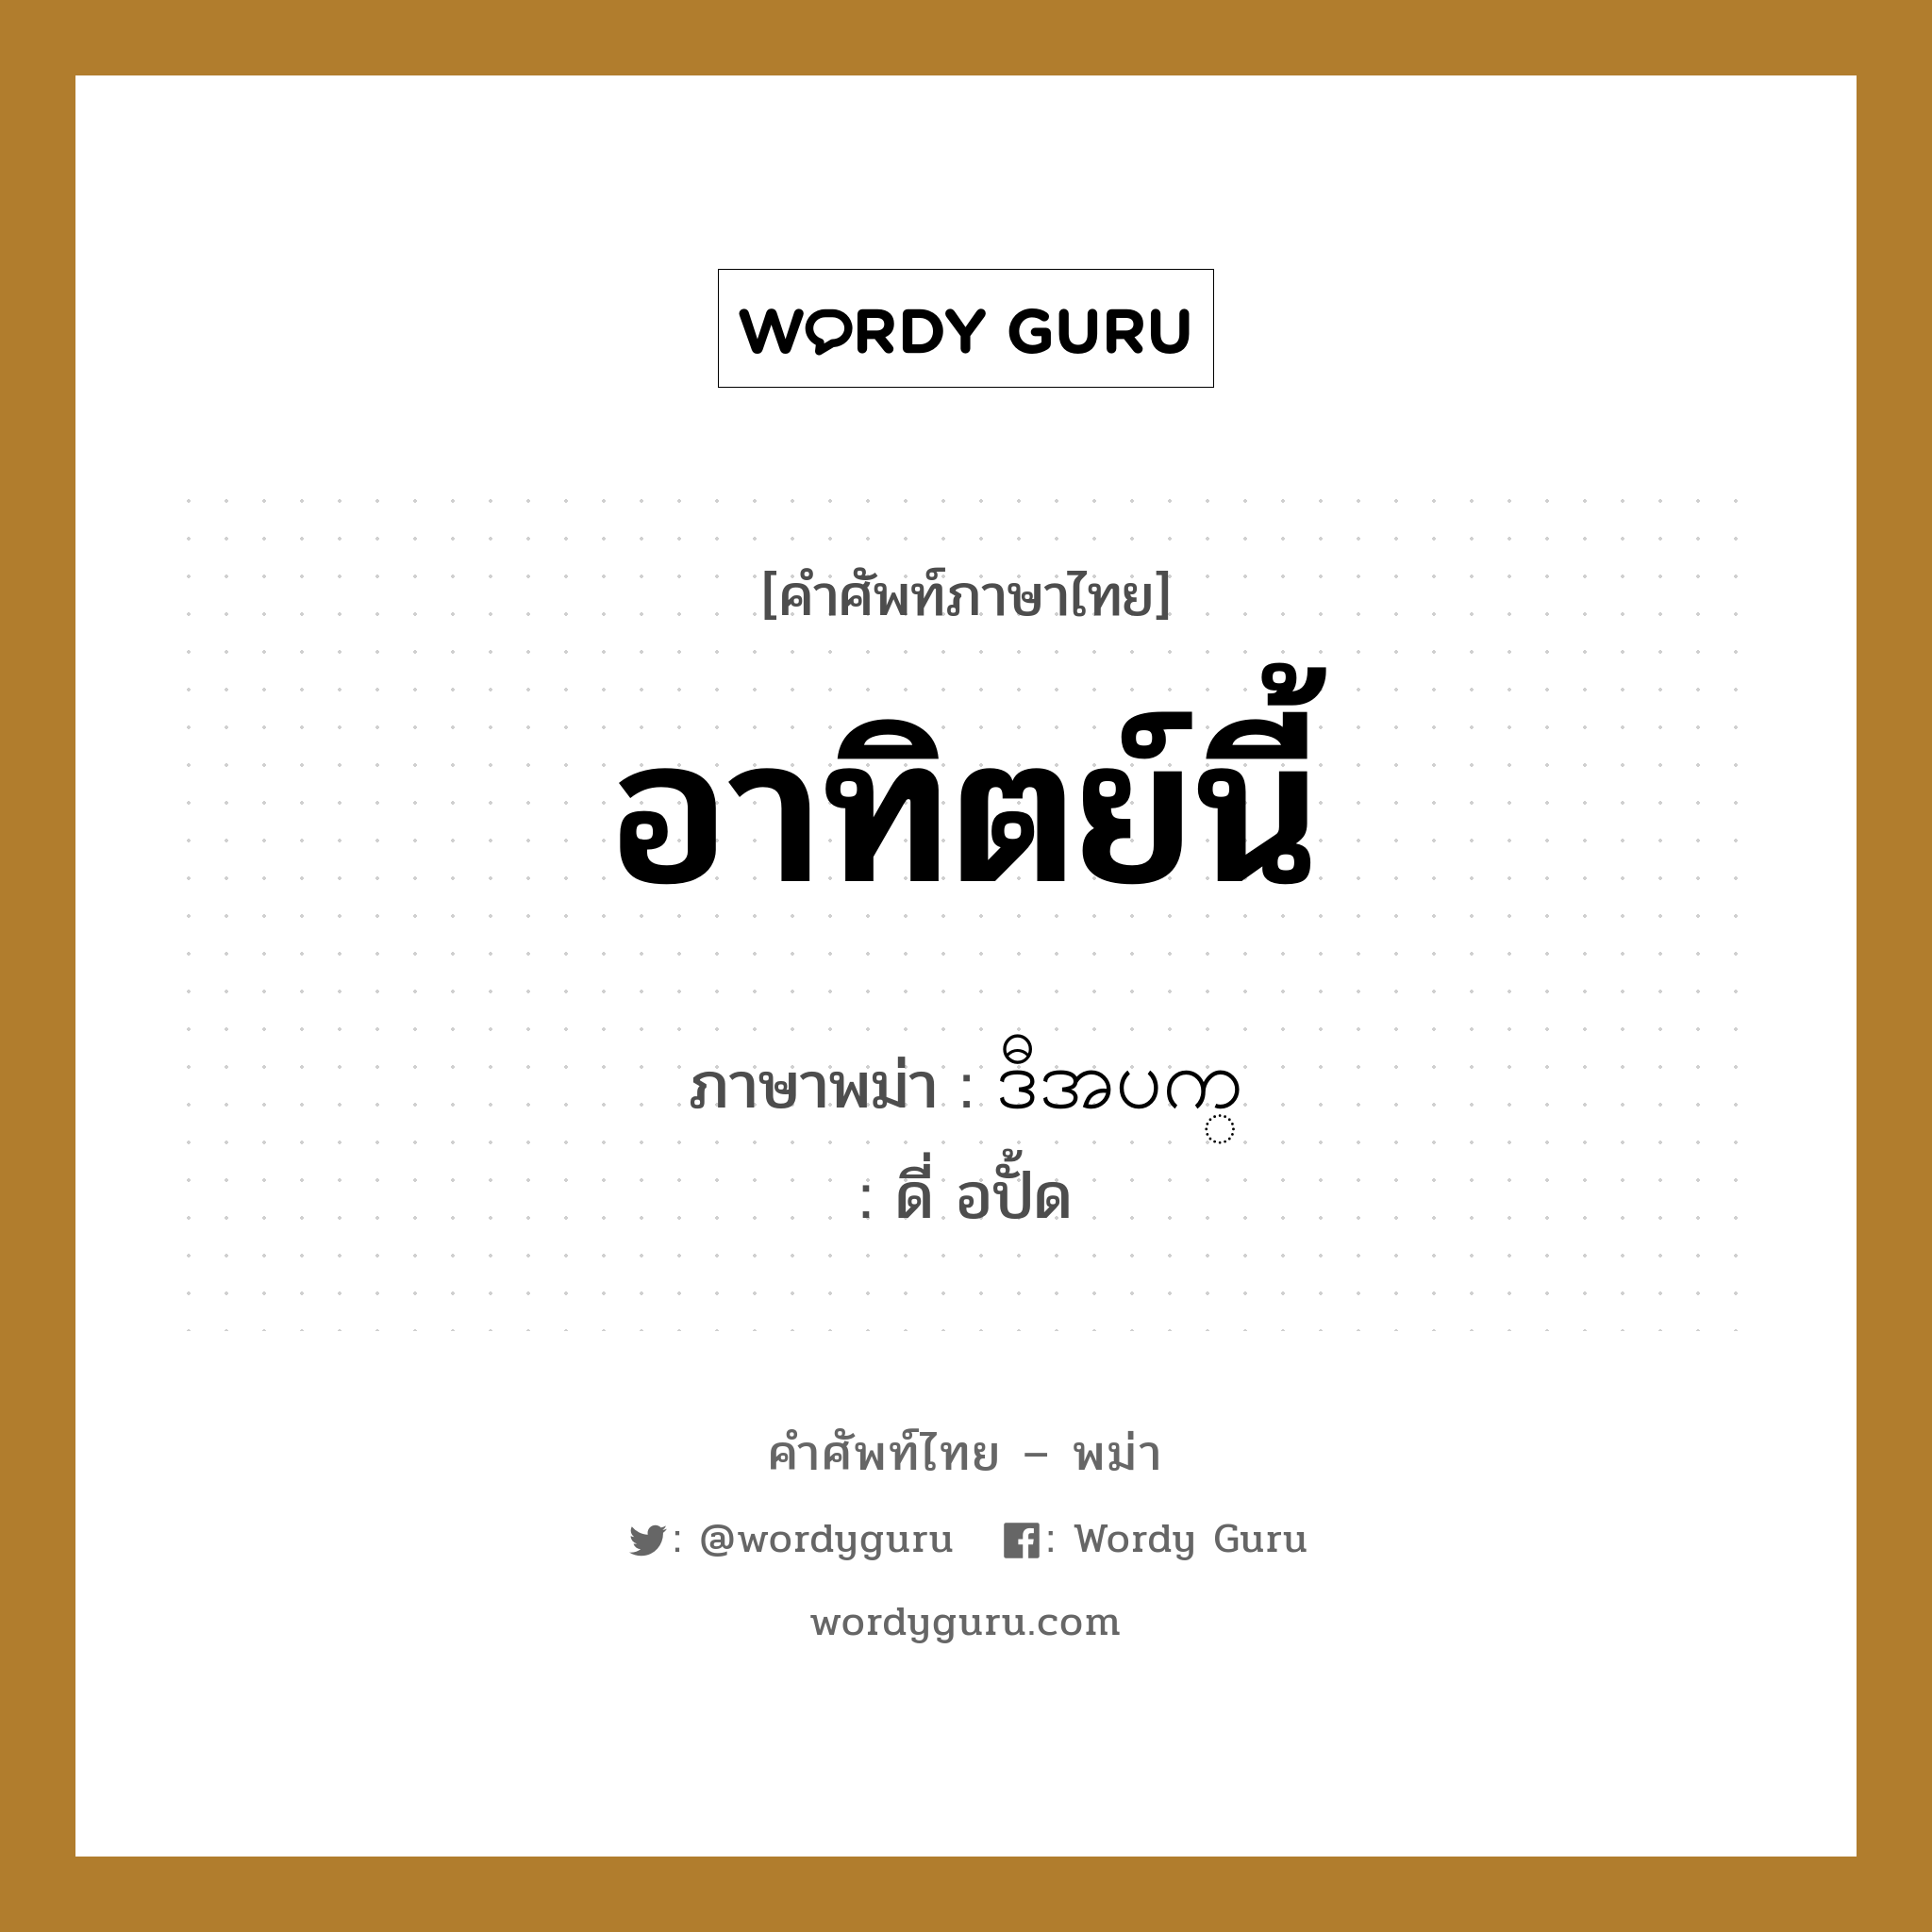 ဒီအပက္ ภาษาไทย?, คำศัพท์ภาษาไทย - พม่า ဒီအပက္ ภาษาพม่า อาทิตย์นี้ หมวด หมวดวัน เดือน ปี ดี่ อปั้ด หมวด หมวดวัน เดือน ปี